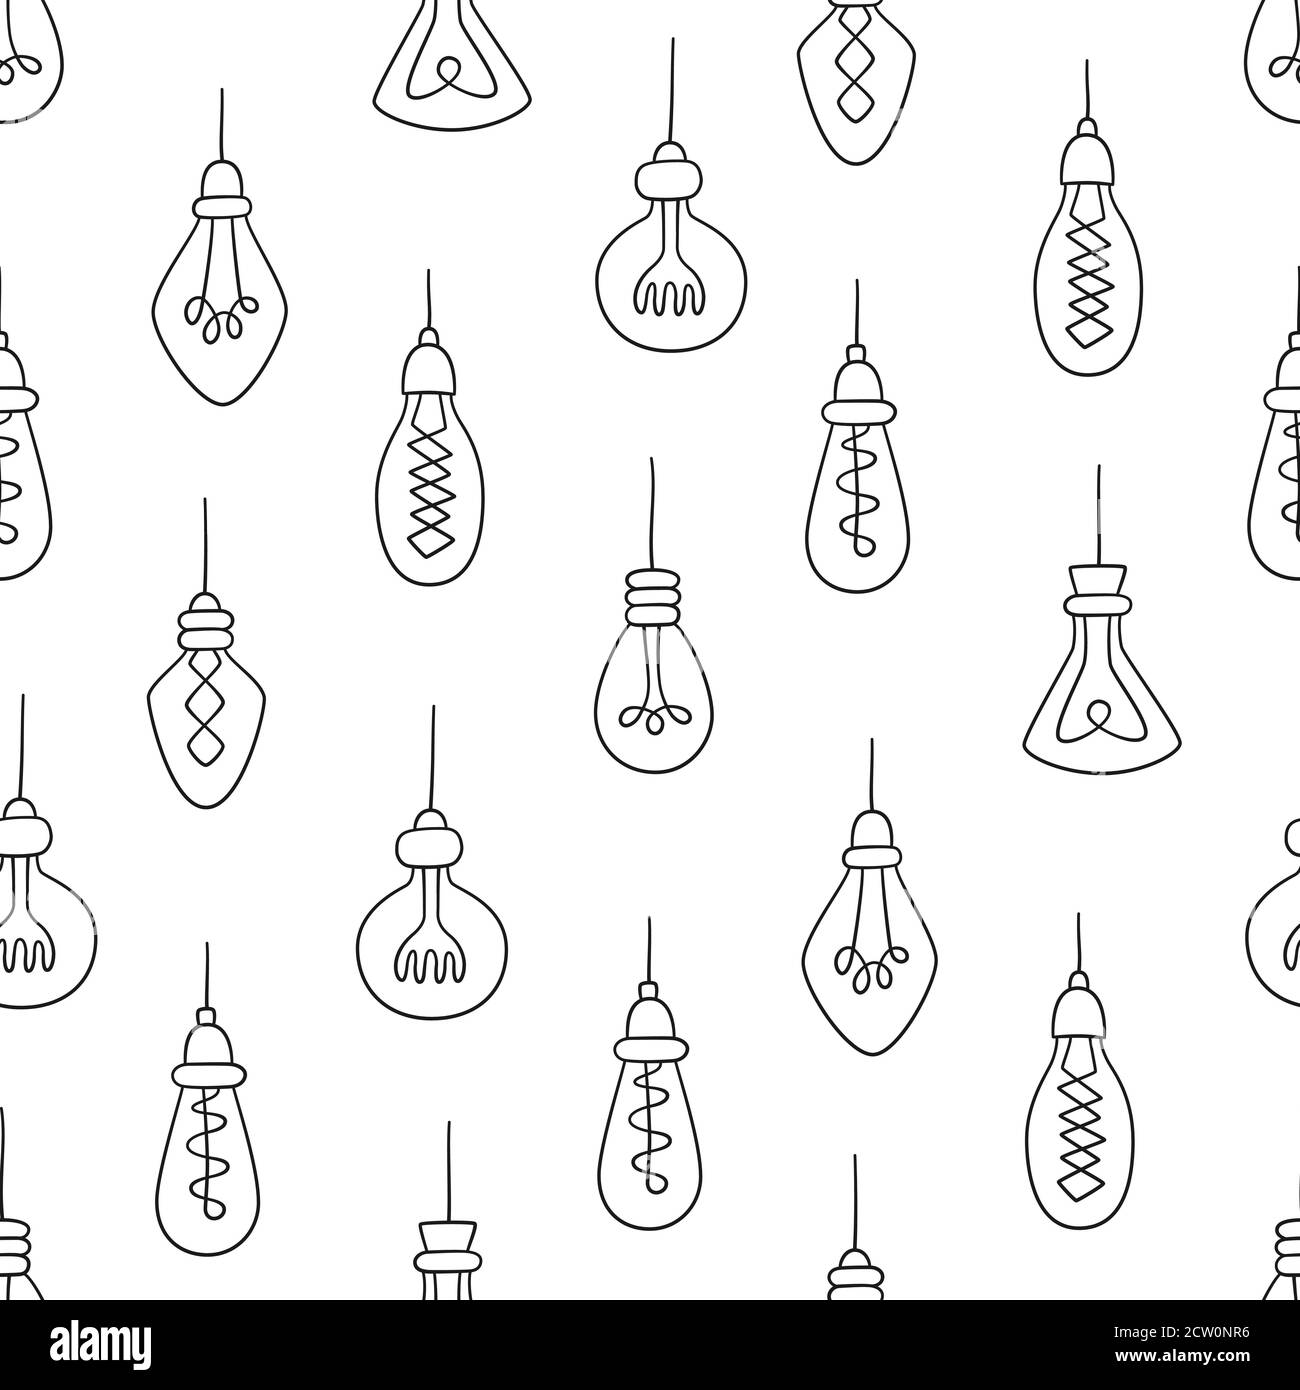 Handgezeichnetes nahtloses Muster von Glühbirnen. Loft-Lampen im Doodle-Stil. Stock Vektor